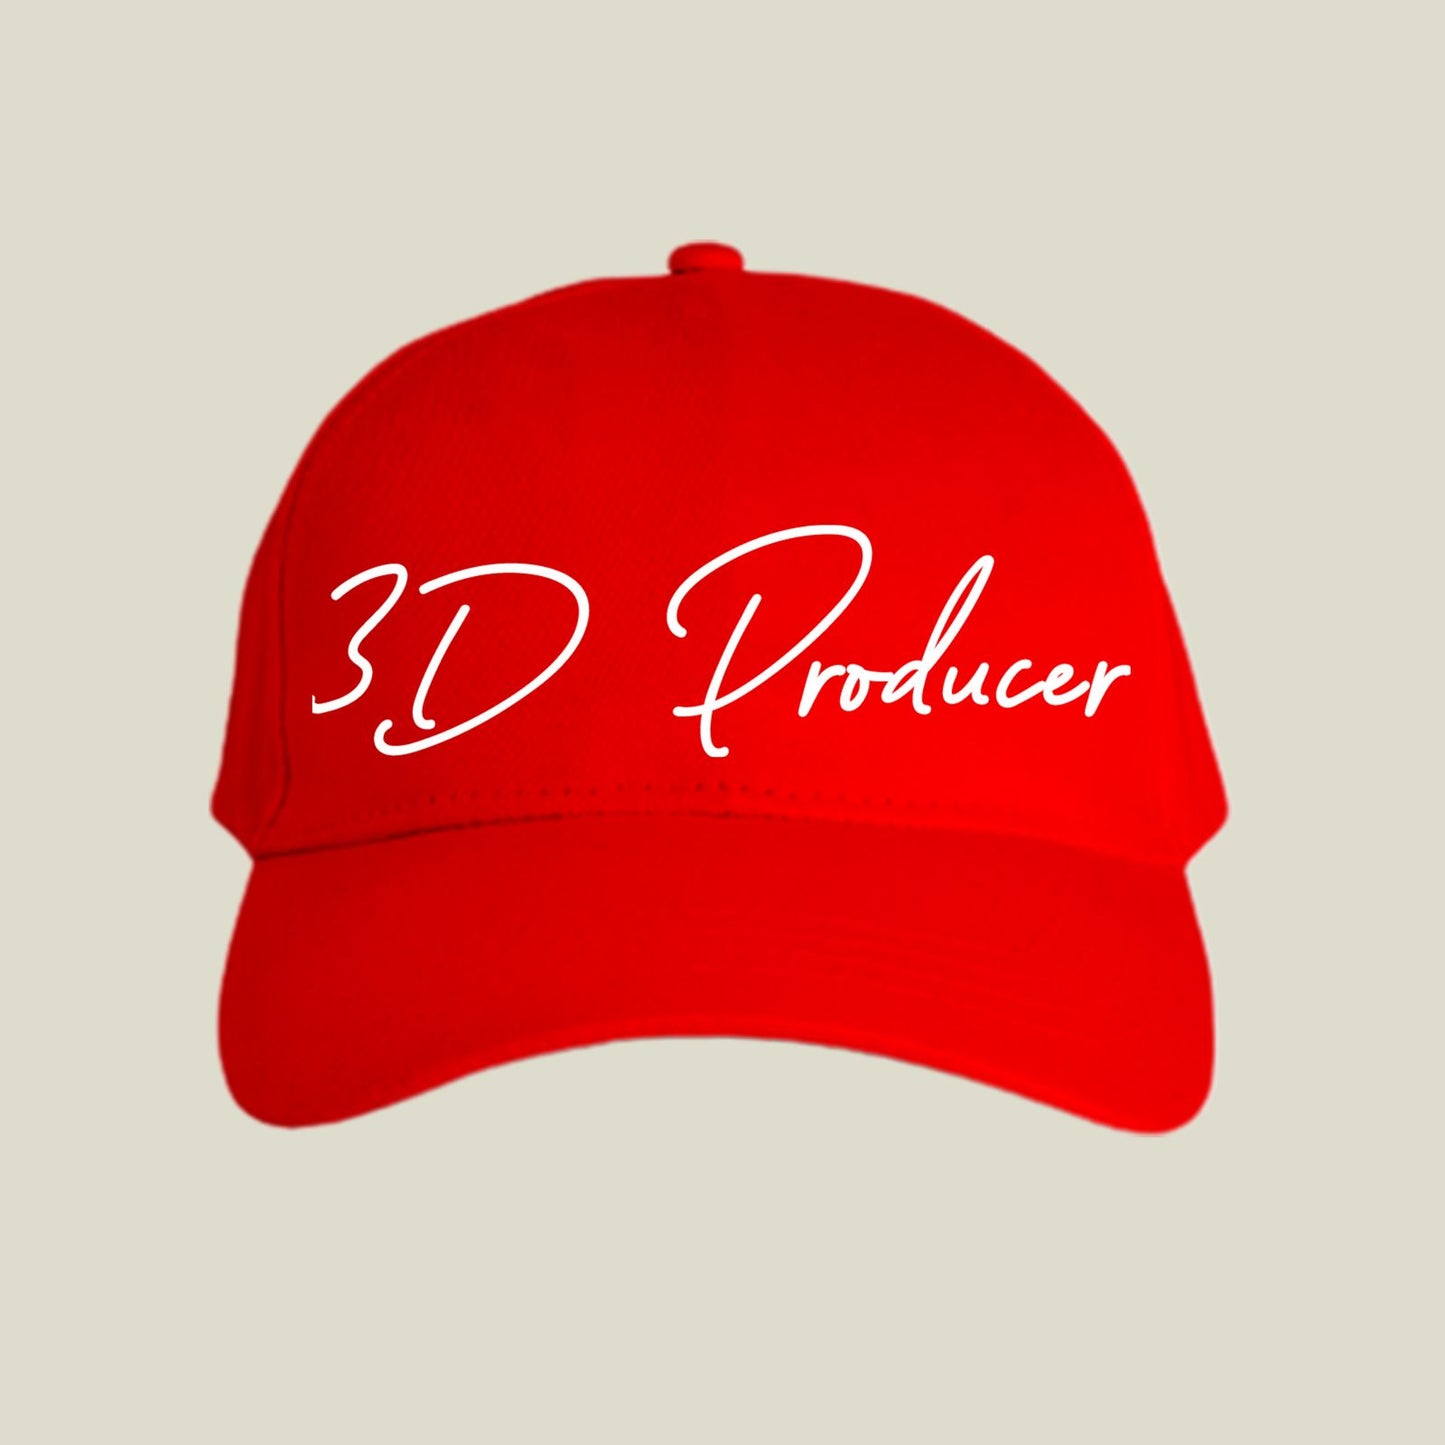 3D Producer Cap C-DPR1